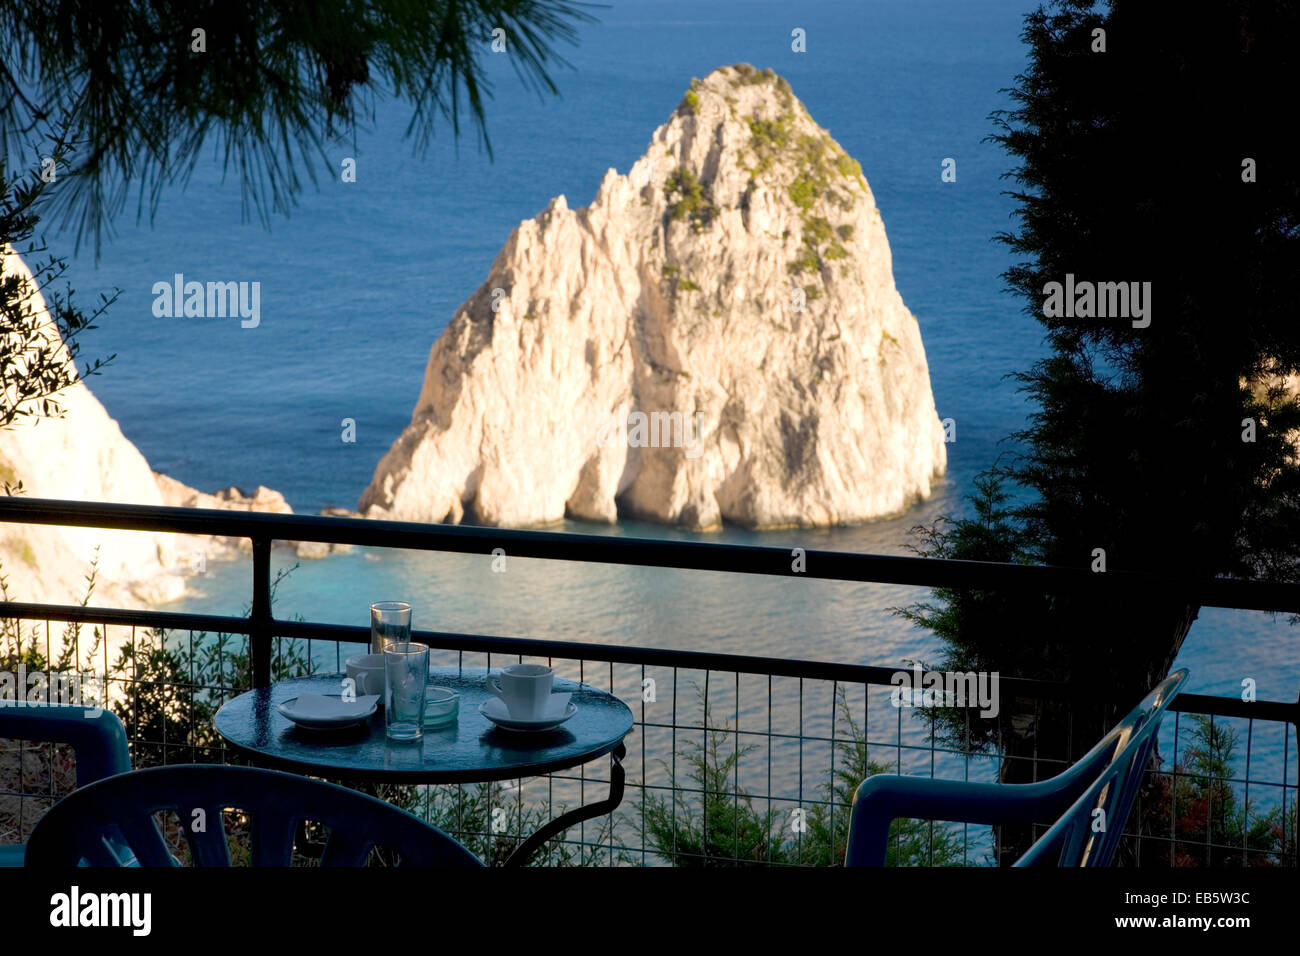 Keri, Zakynthos, Ionische Inseln, Griechenland. Terrasse von einer Klippe Taverne am Kap Keri Blick auf den Myzithres Felsen. Stockfoto